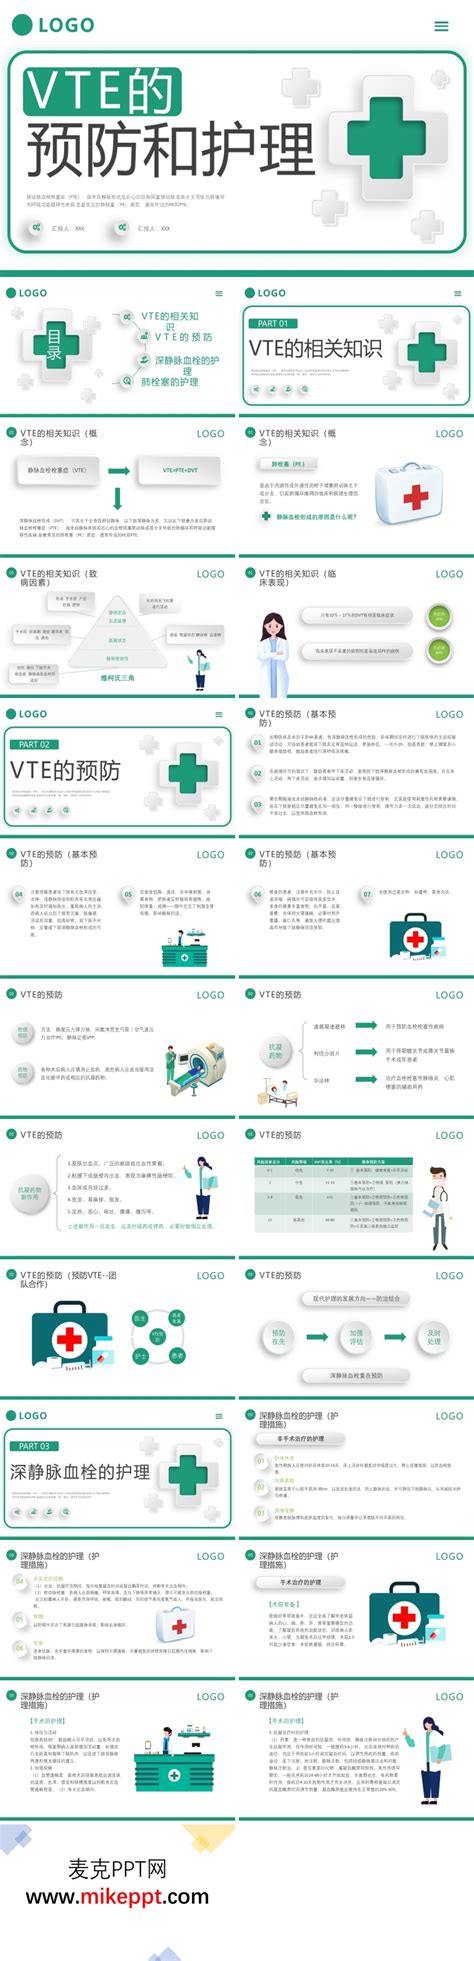 2021中国VTE防治大会_健康界